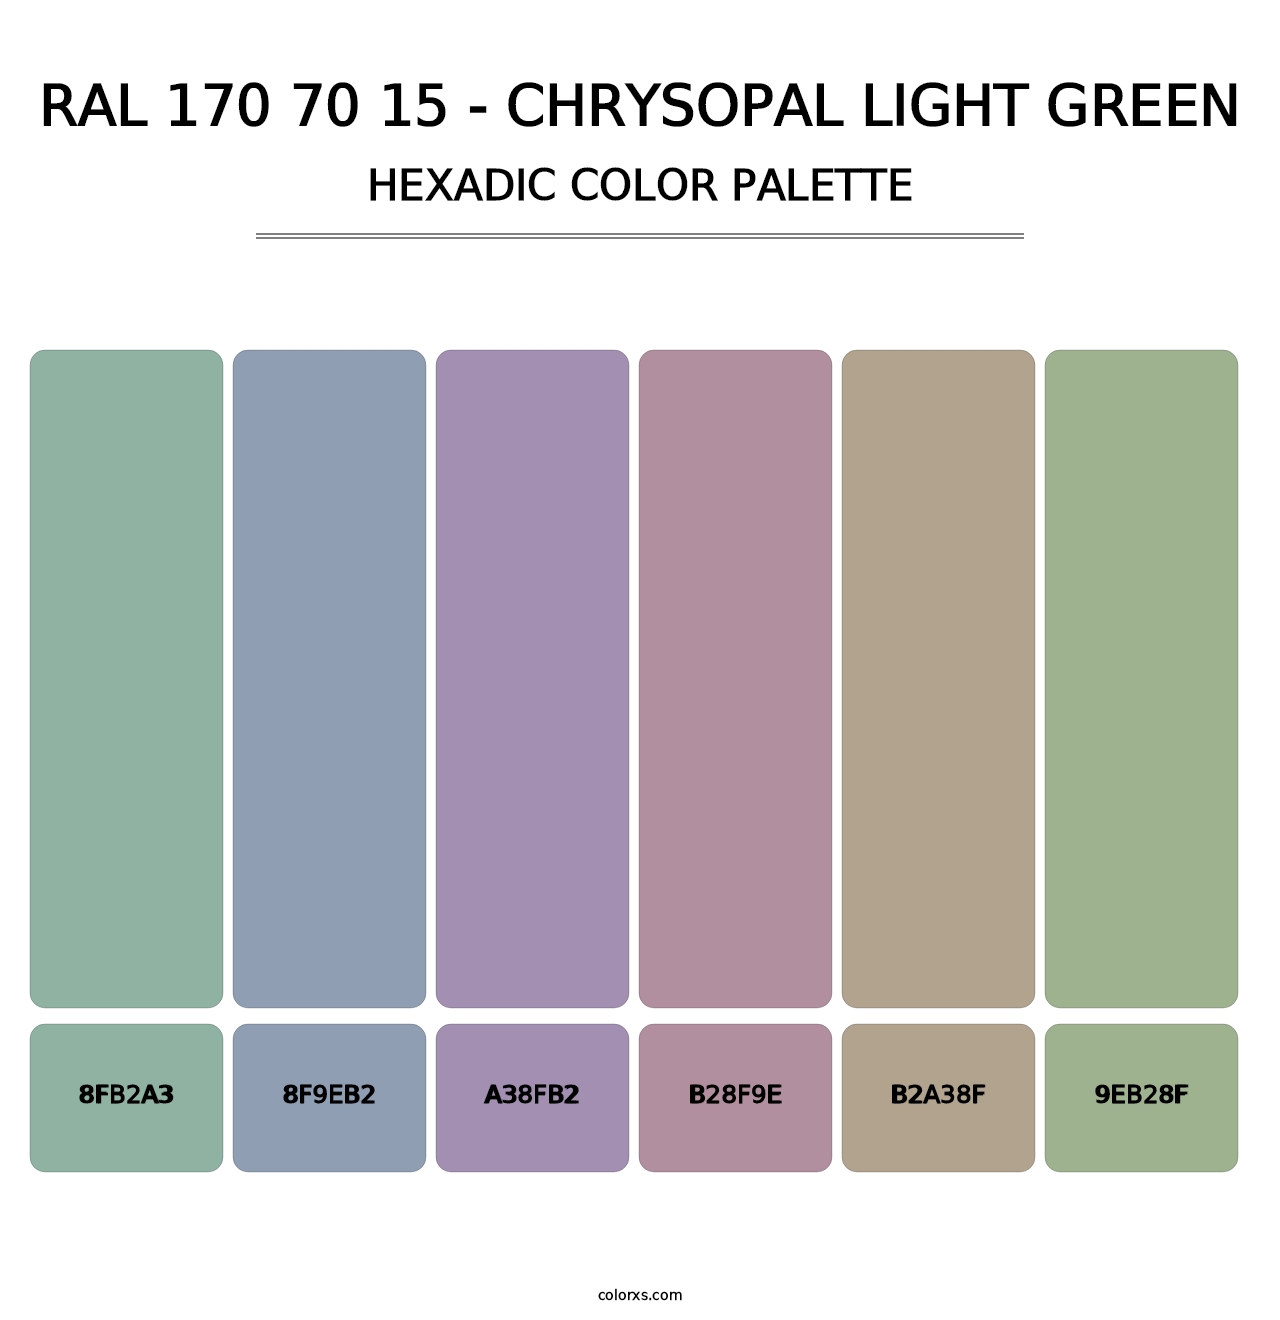 RAL 170 70 15 - Chrysopal Light Green - Hexadic Color Palette